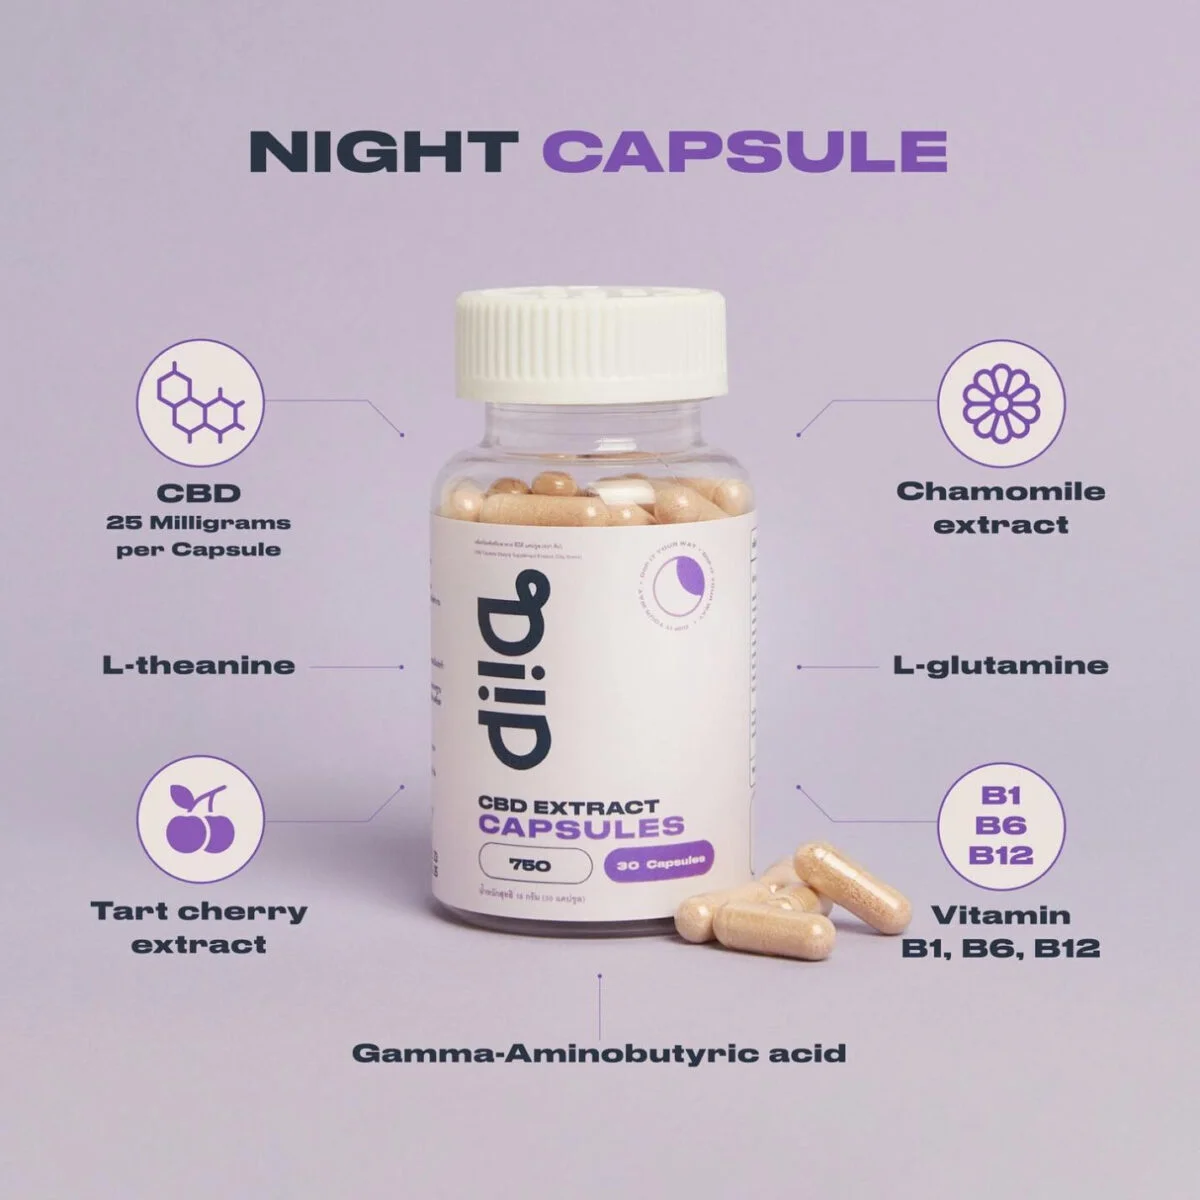 CBD night capsules